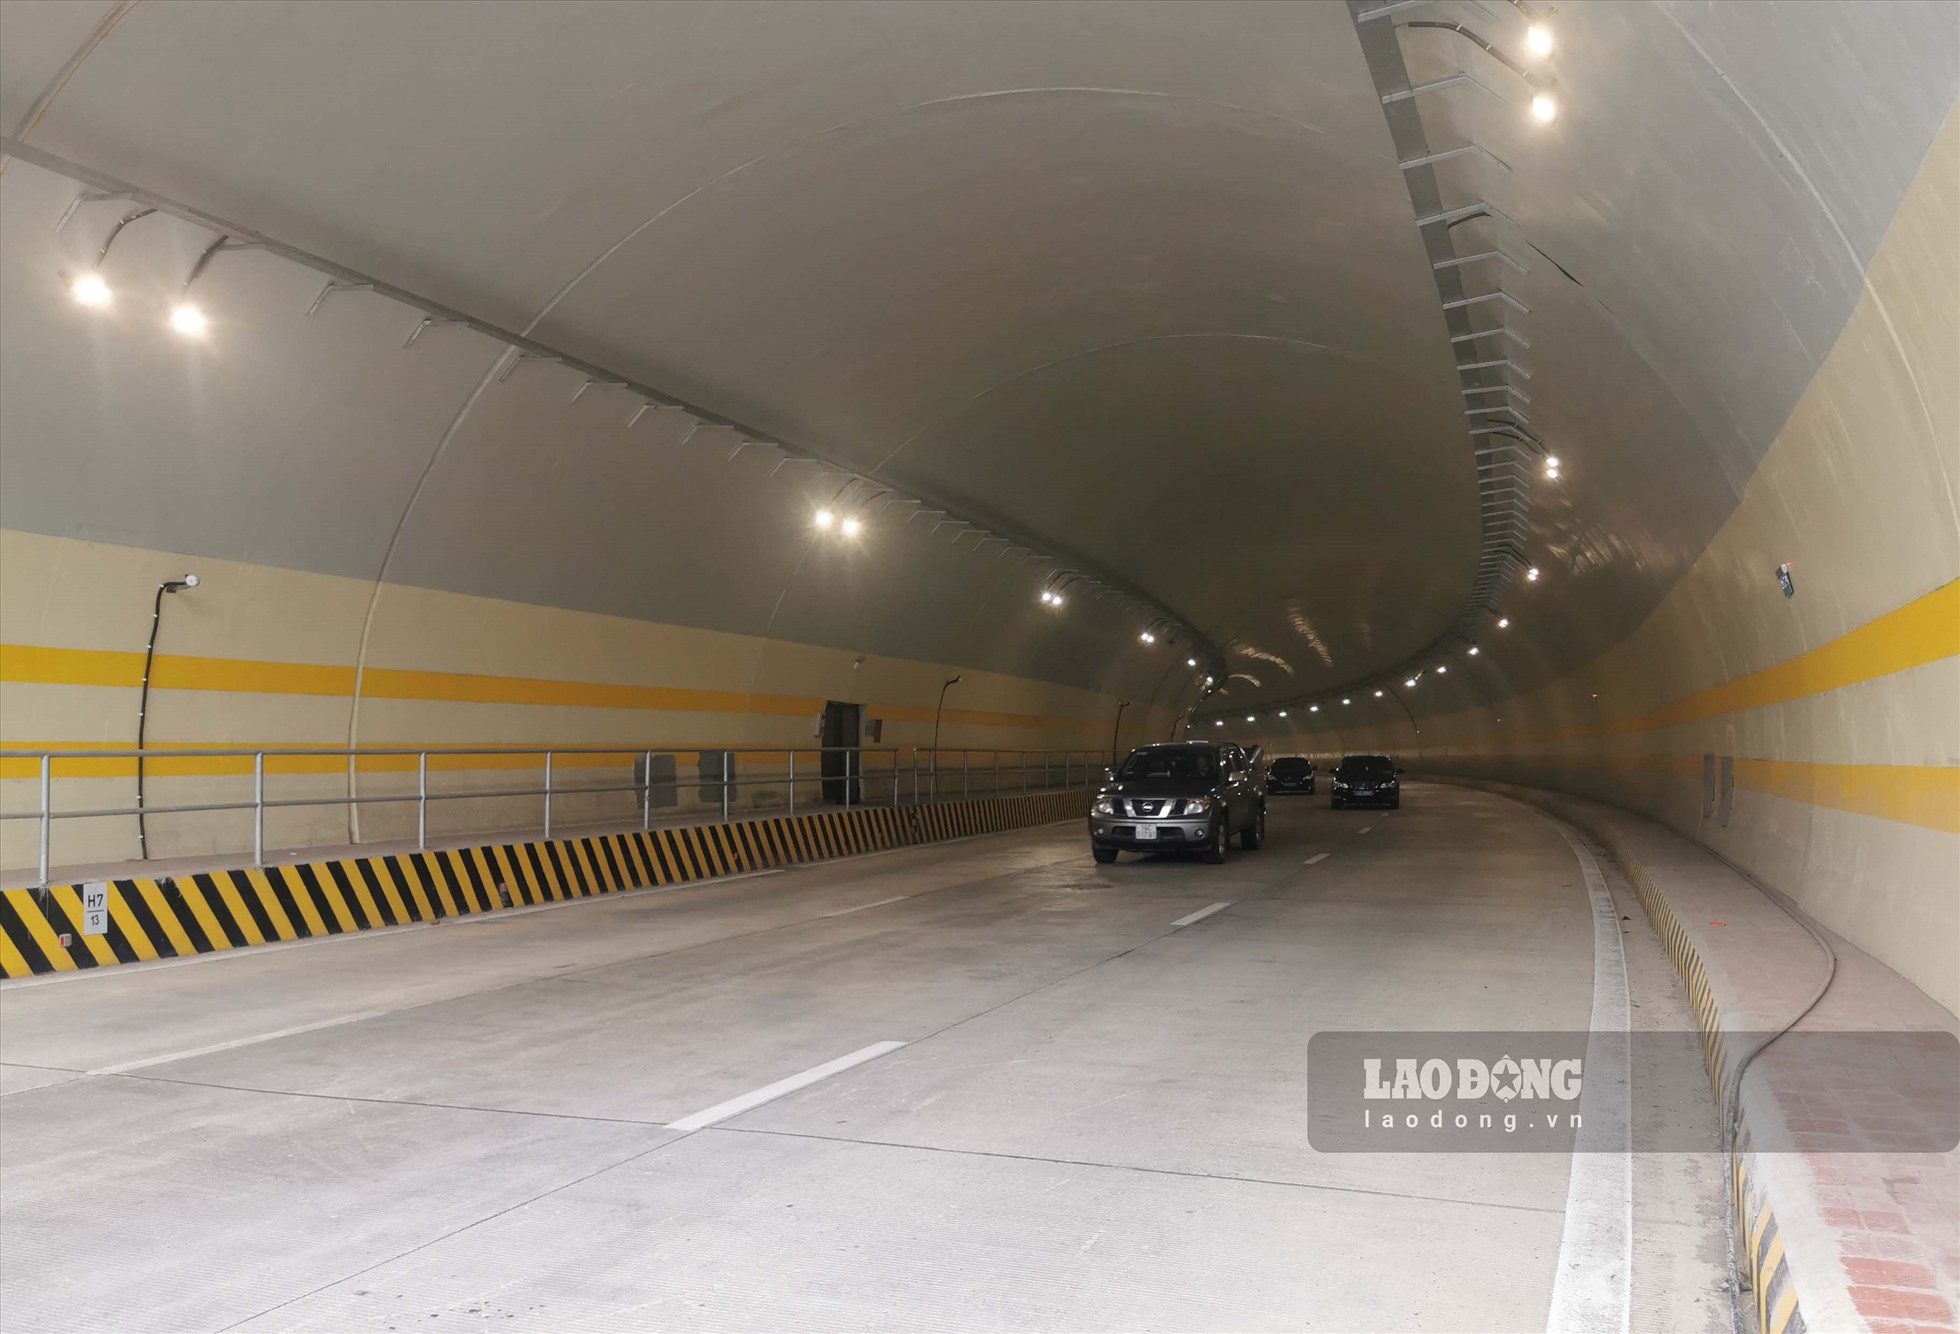 Đây là đường hầm xuyên núi lớn nhất Quảng Ninh đến thời điểm này và cũng là một trong những đường hầm xuyên núi có nền đường lớn nhất Việt Nam với tổng mức đầu tư trên 247,5 tỉ đồng. Ảnh: Đoàn Hưng